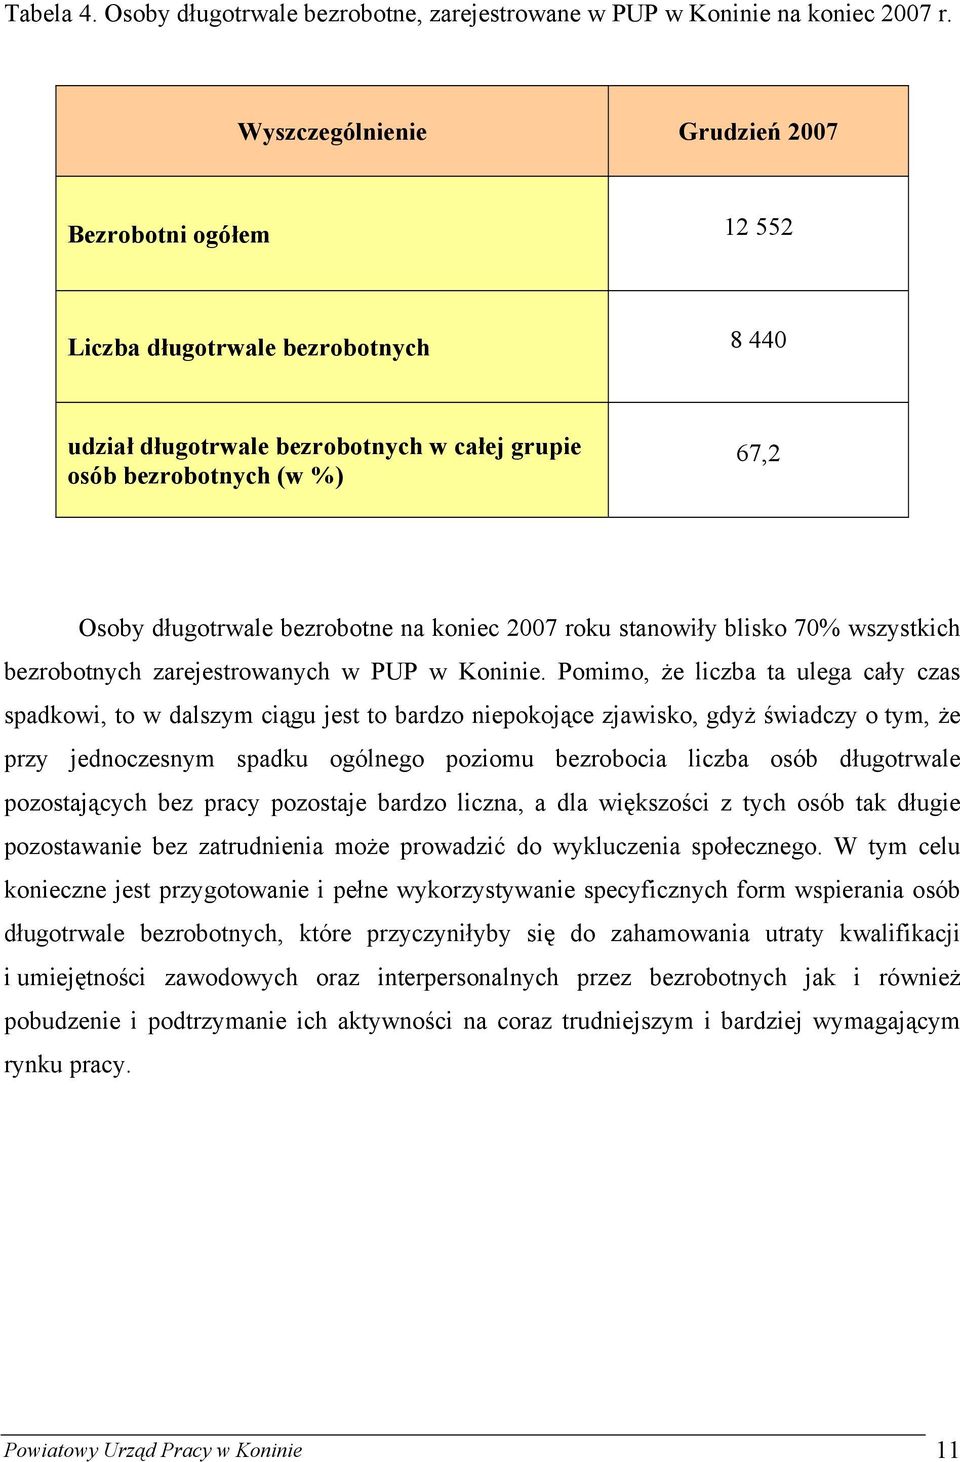 na koniec 2007 roku stanowiły blisko 70% wszystkich bezrobotnych zarejestrowanych w PUP w Koninie.